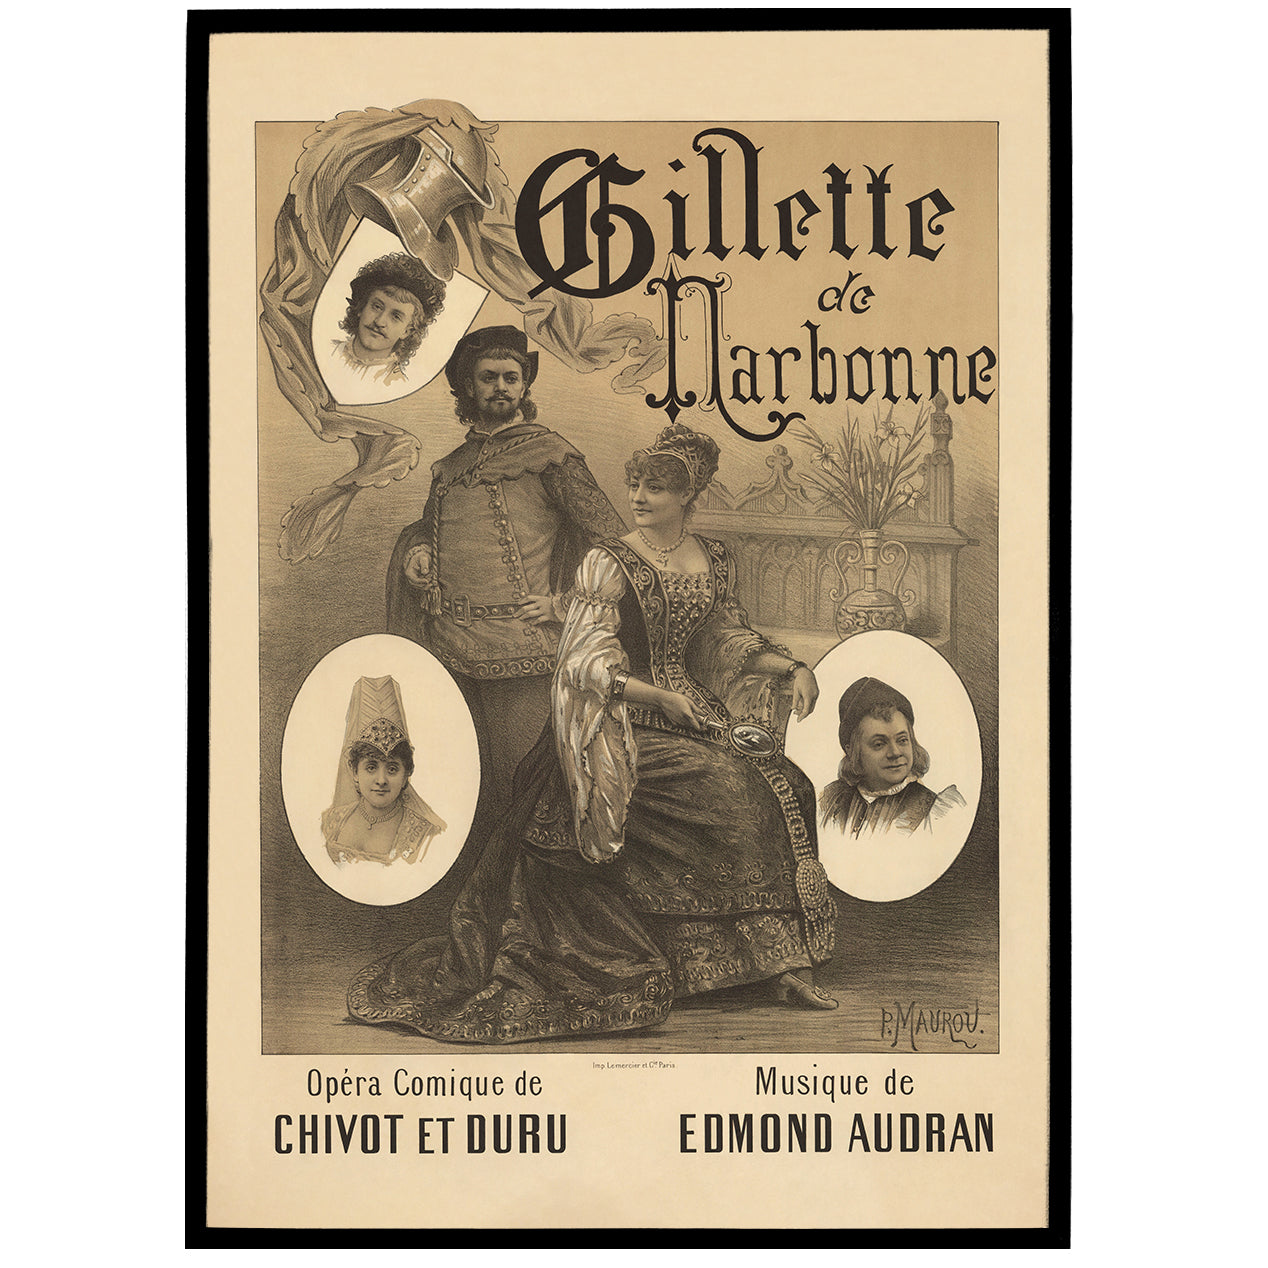 Gillette de Narbonne - Vintage Opera Poster